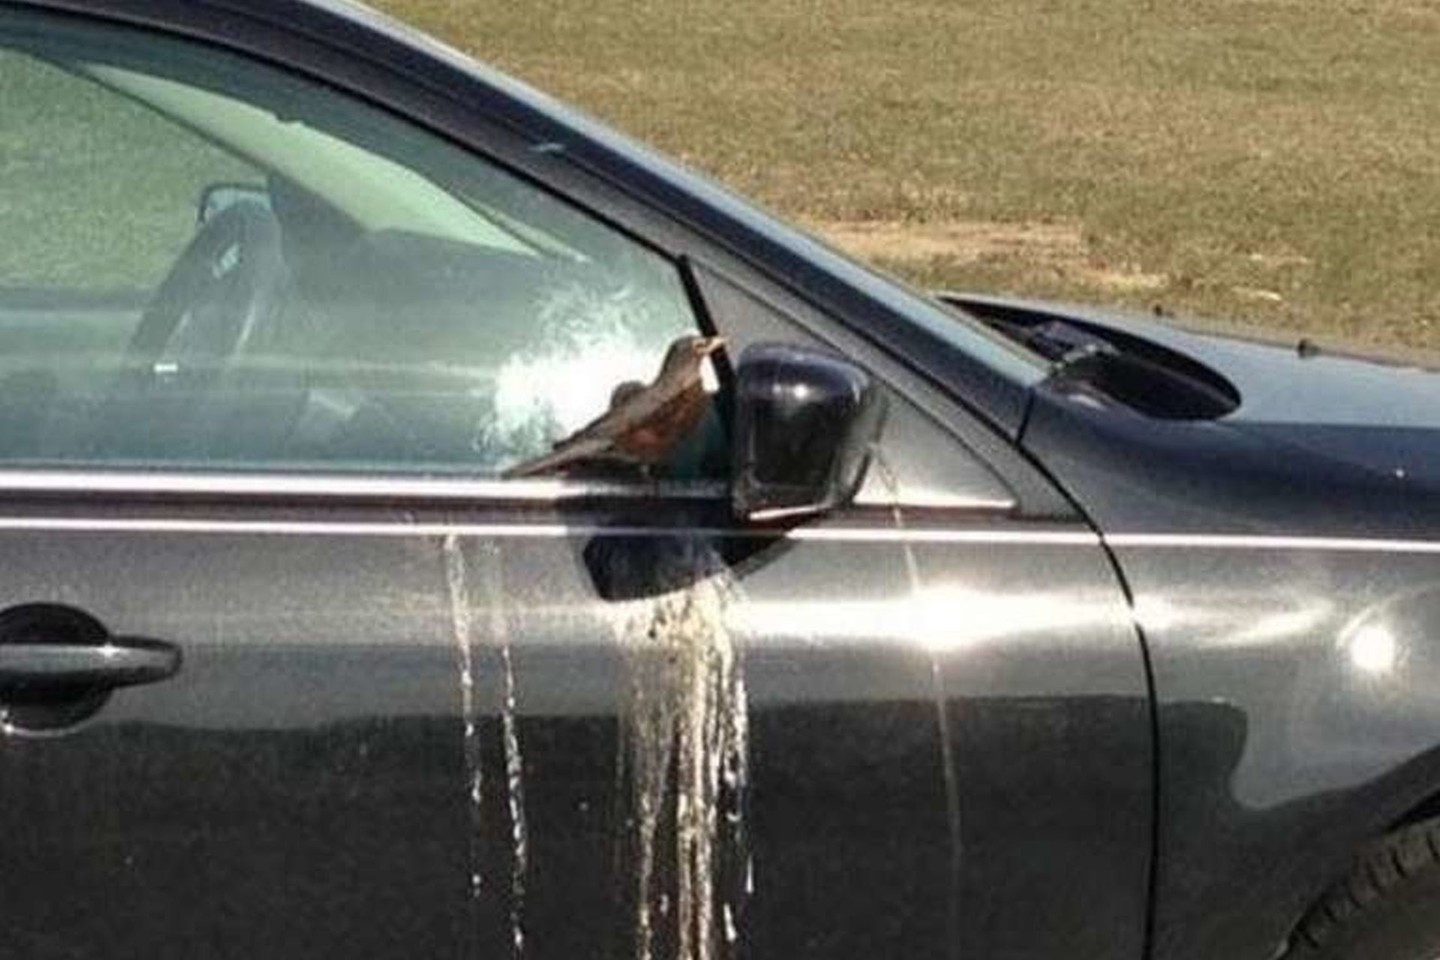 Ir kodėl paukščiai taip elgiasi vos jūs nusiplaunate automobilį?<br>pleated-jeans.com nuotr.